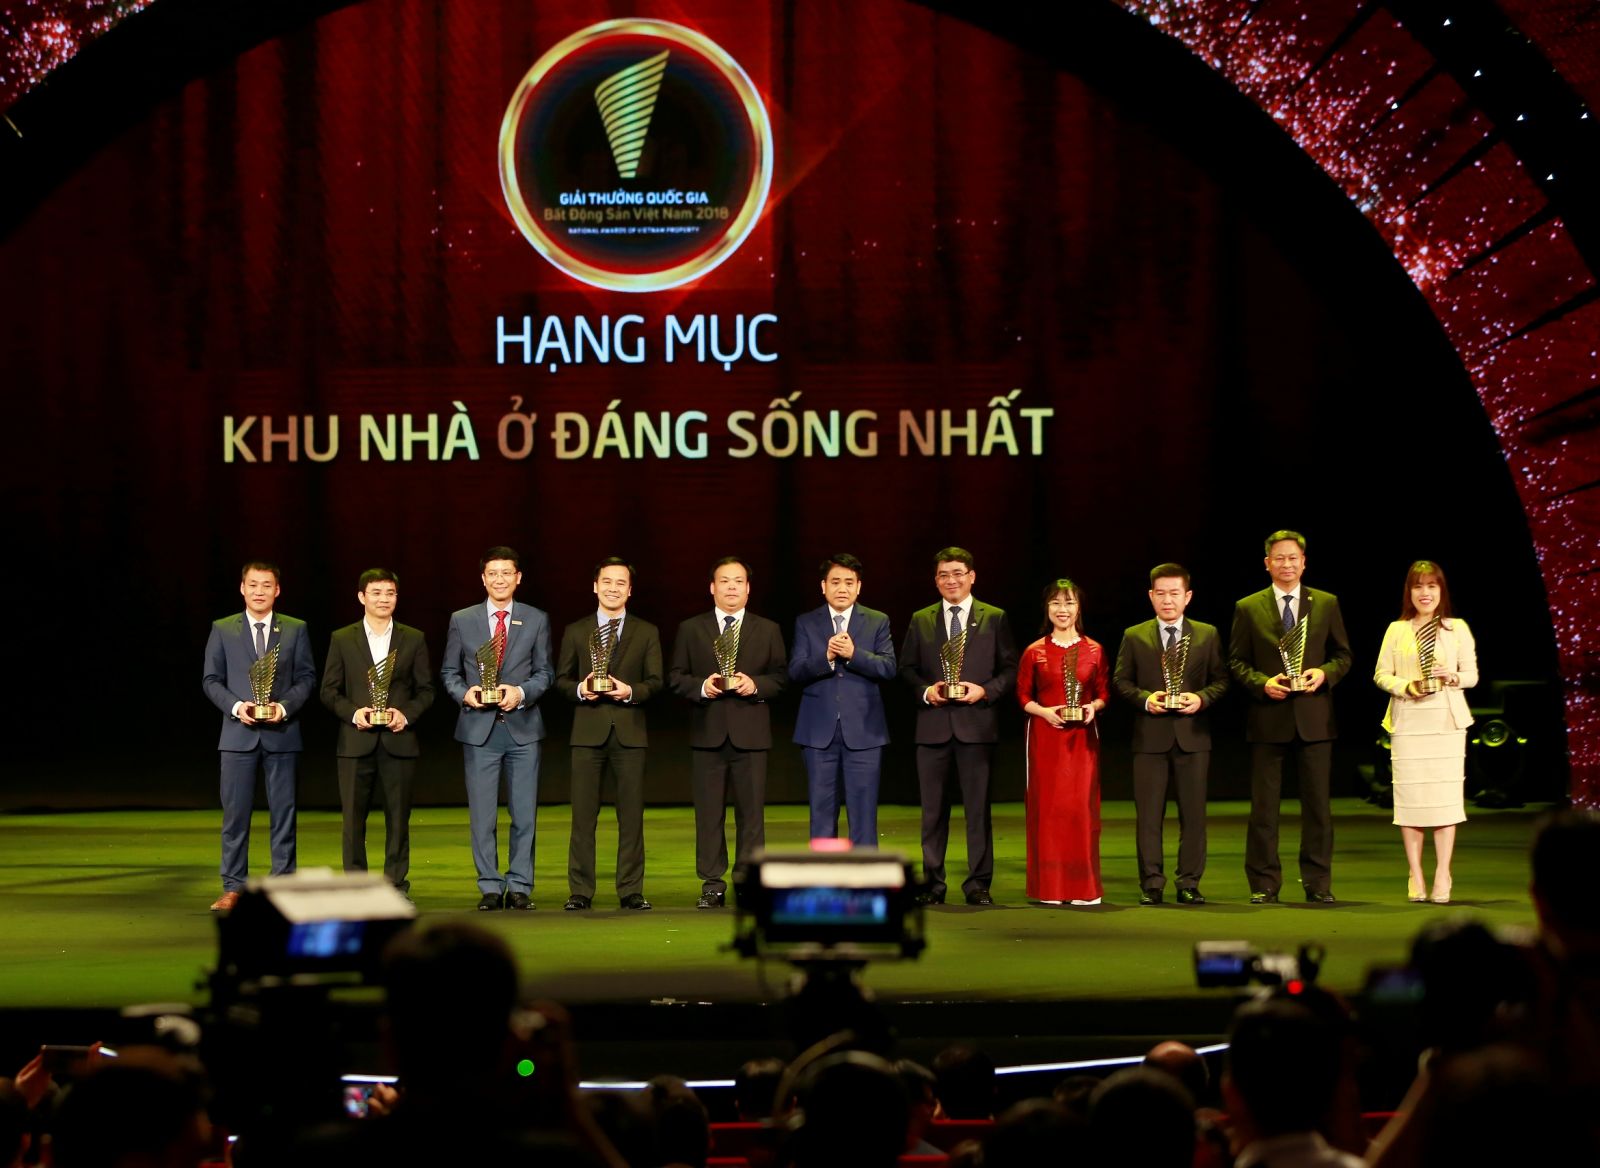 Phó Tổng giám đốc Tập đoàn Tân Hoàng Minh, ông Mạnh Hoàng Thao nhận giải Khu nhà ở đáng sống nhất (ngoài cùng bên trái)